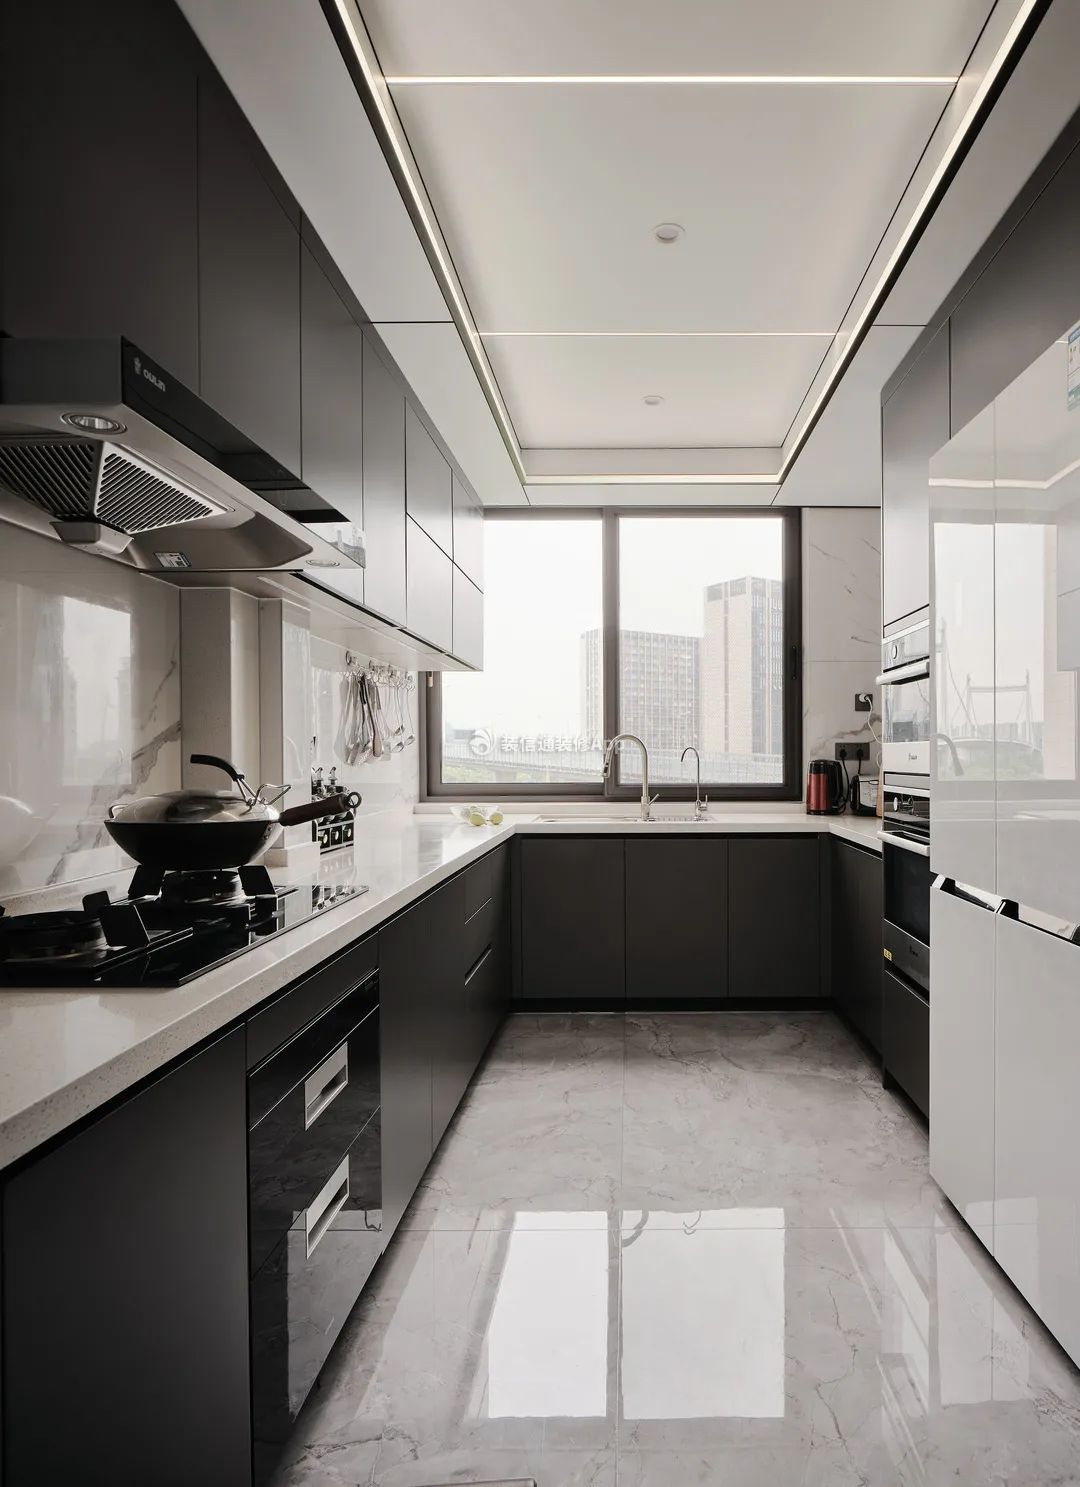 L型厨房布局效果图 4平整体空间简约清新_维意定制家具商城